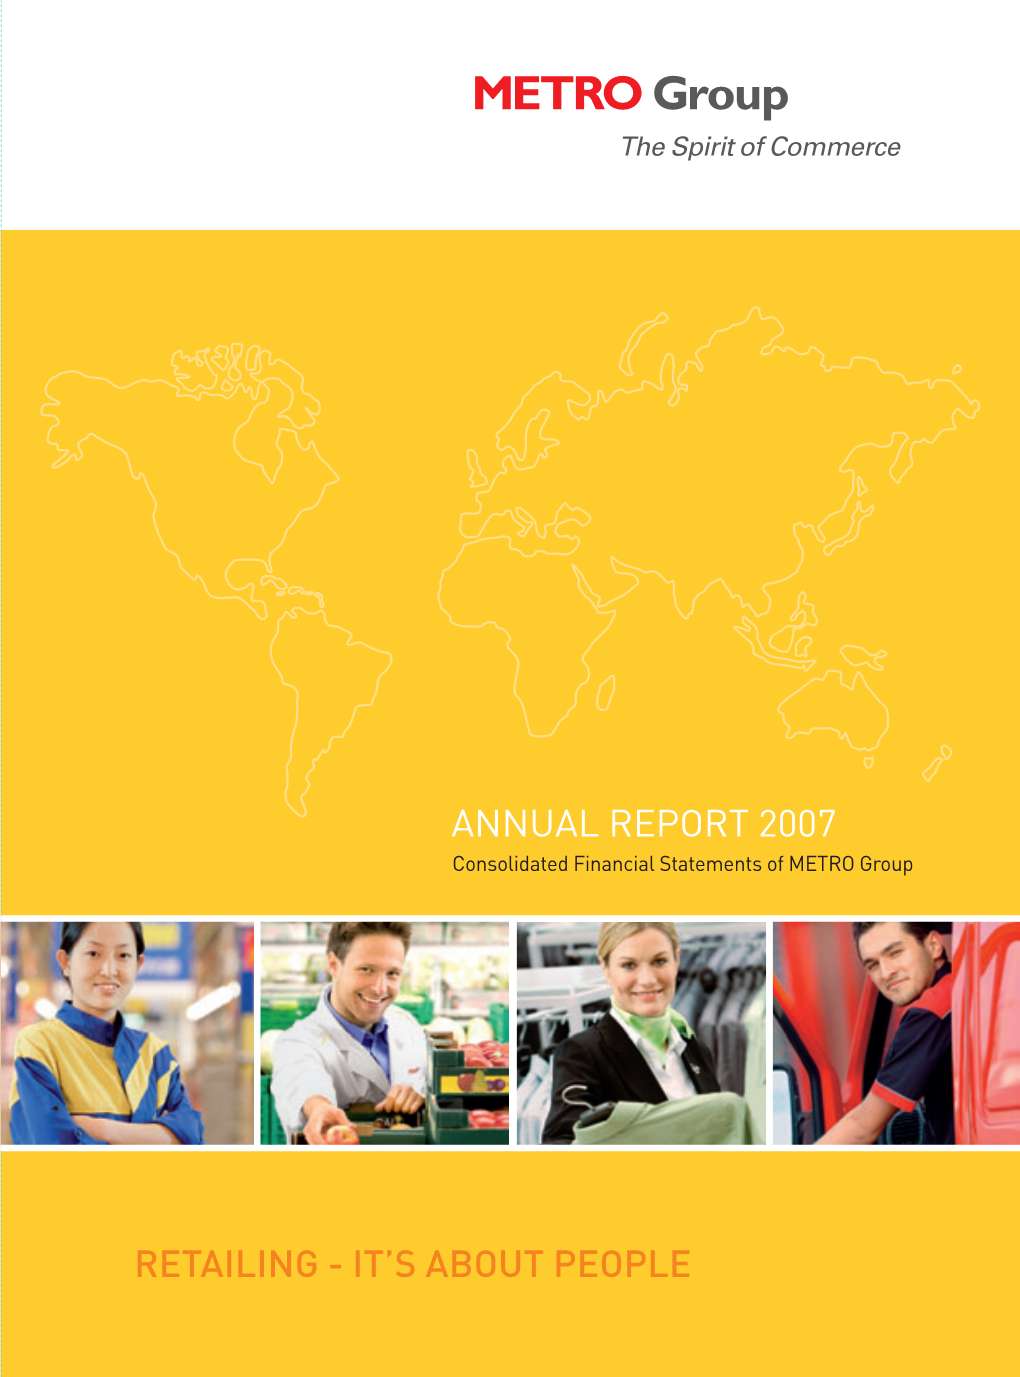 Annual Report 2007 Retailing